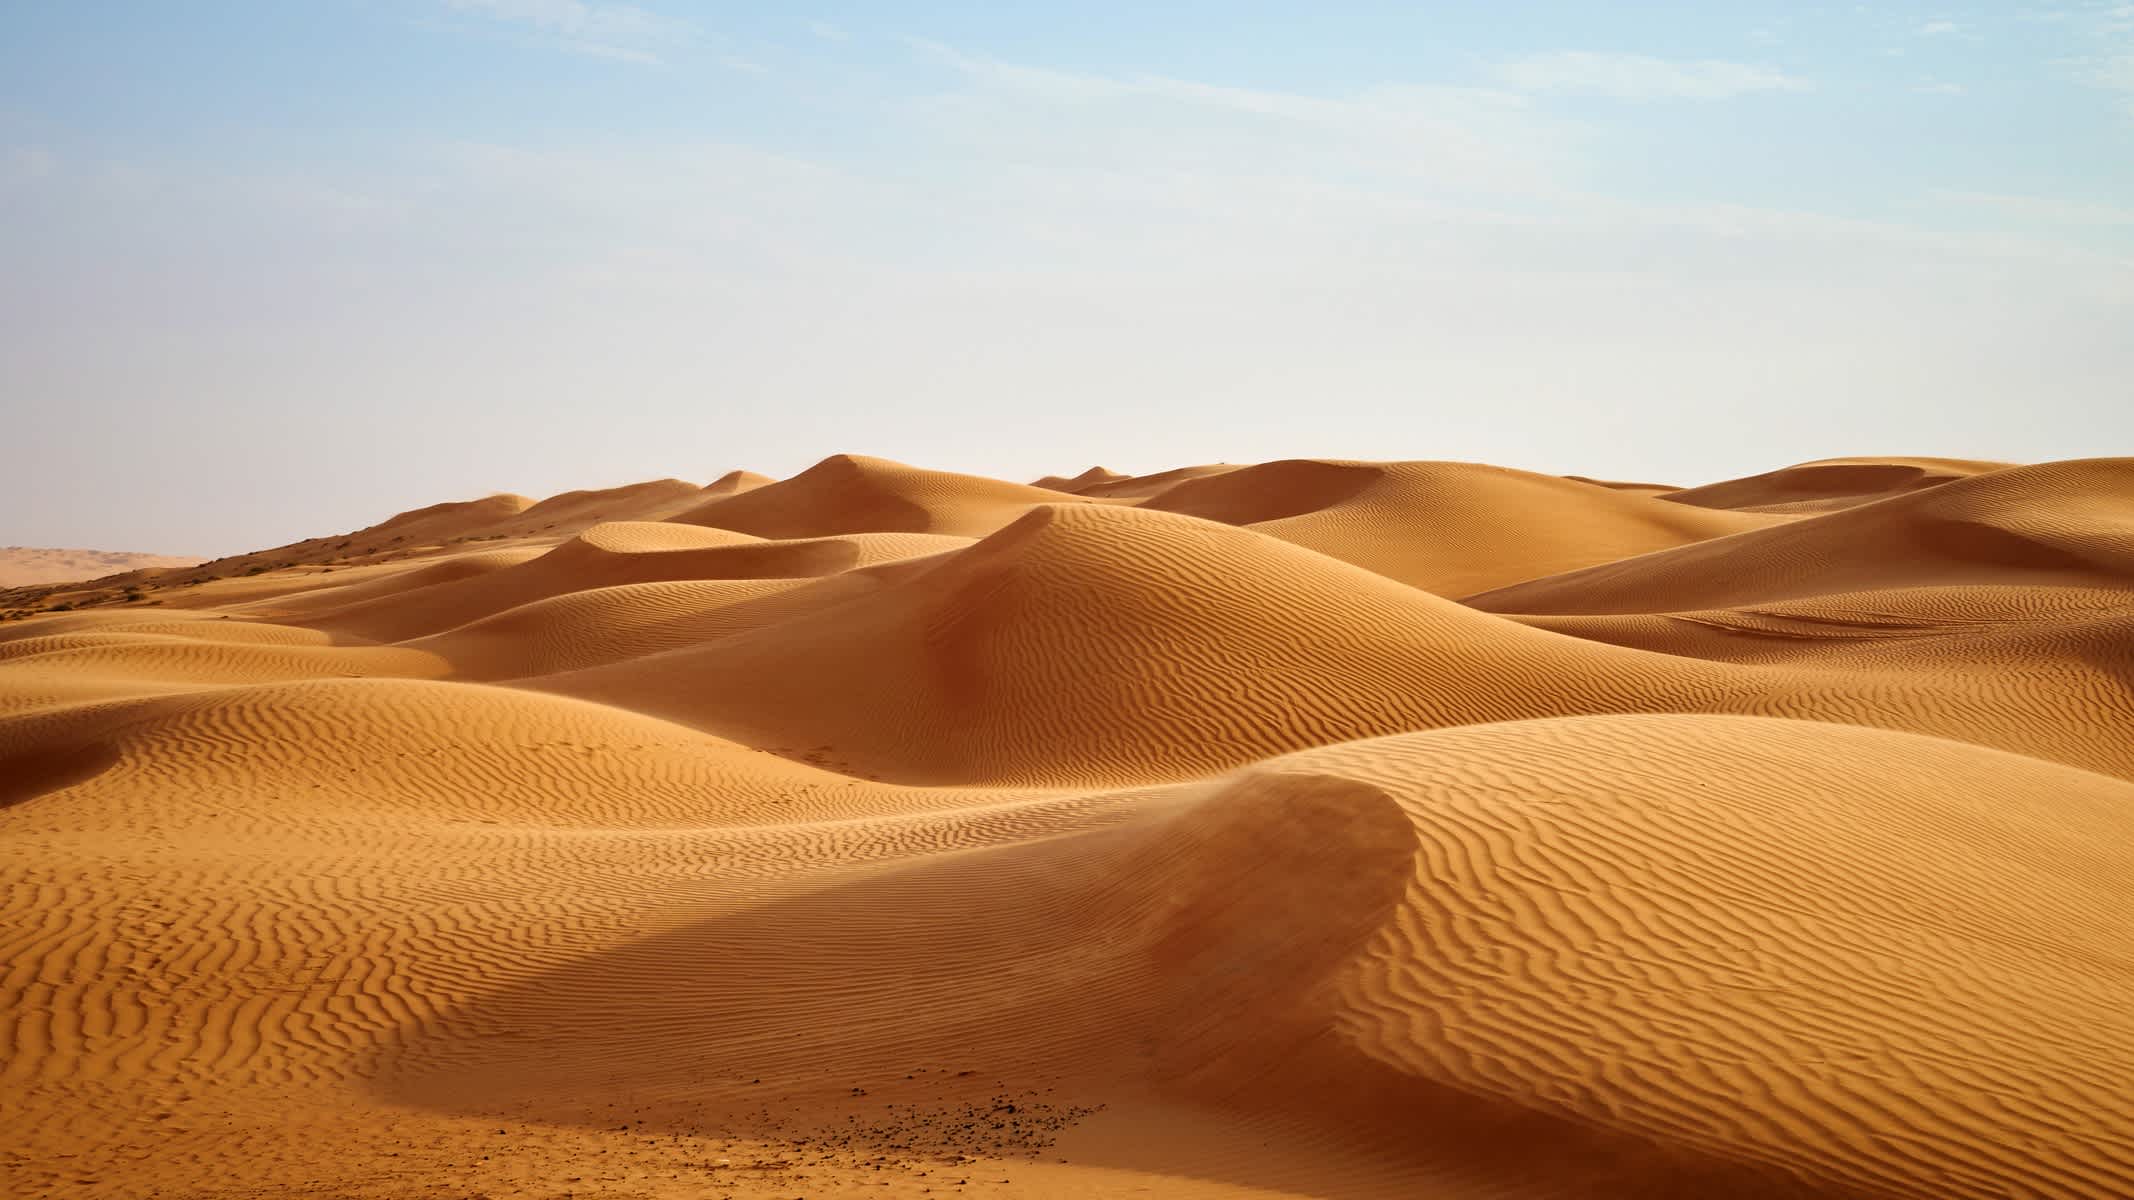 Die Wüstendünen von Rub al-Khali-Wüste in Oman.

